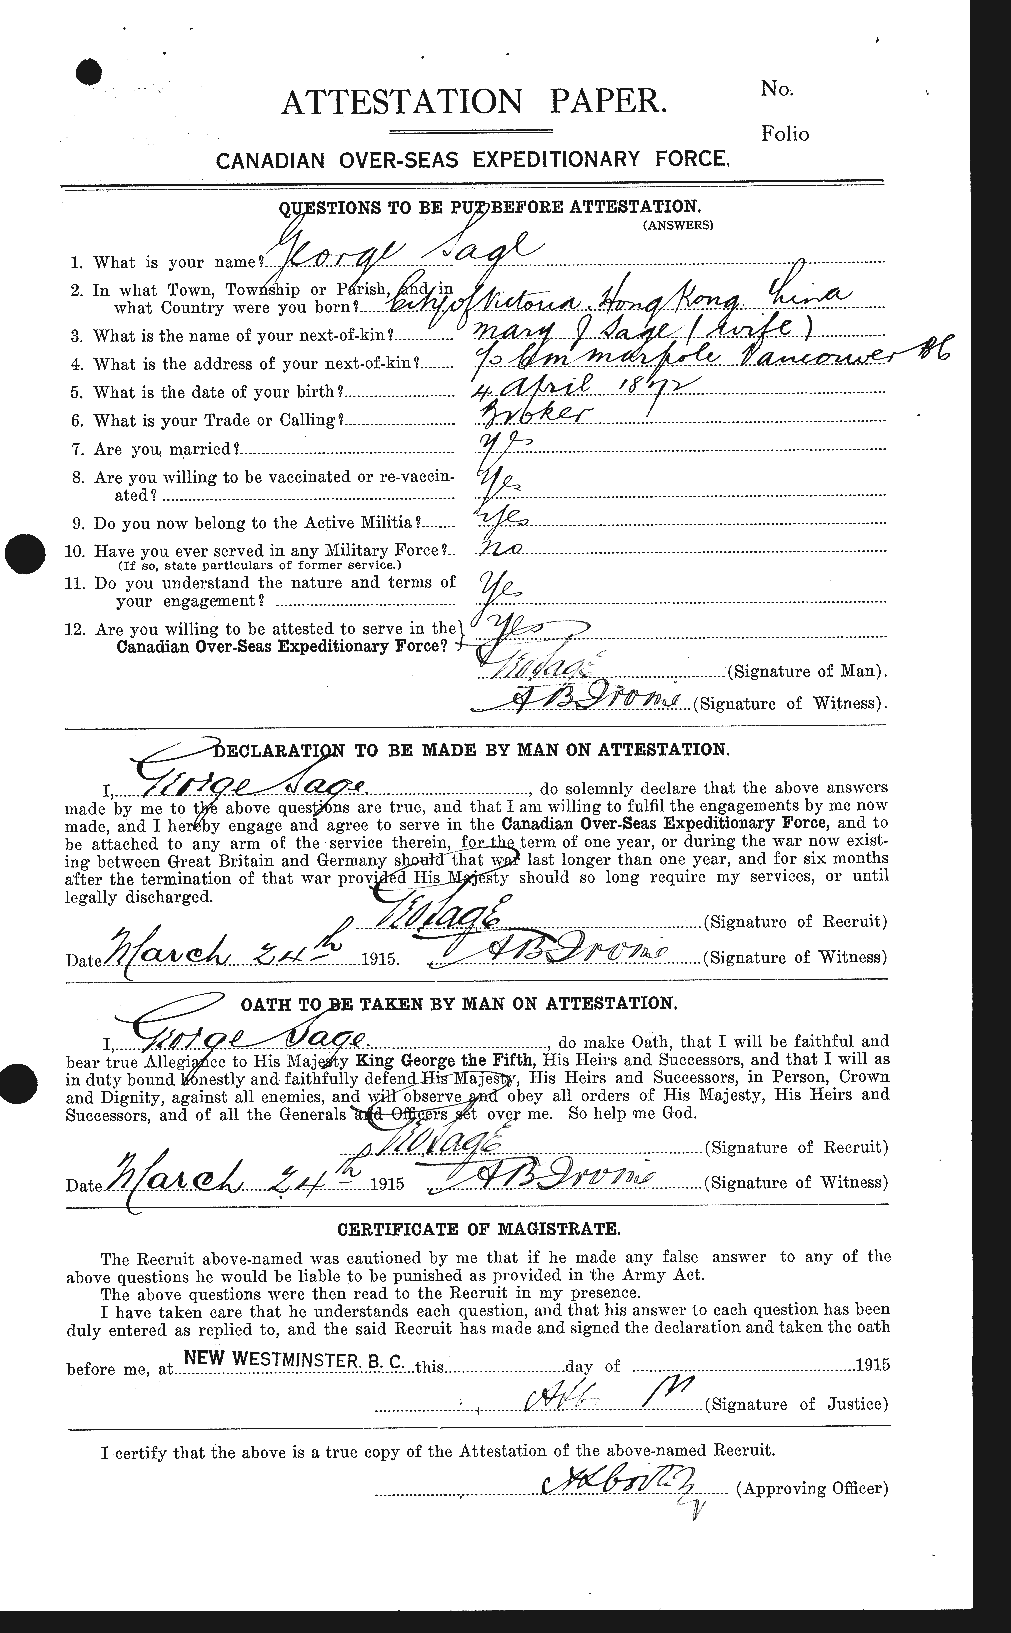 Dossiers du Personnel de la Première Guerre mondiale - CEC 077356a